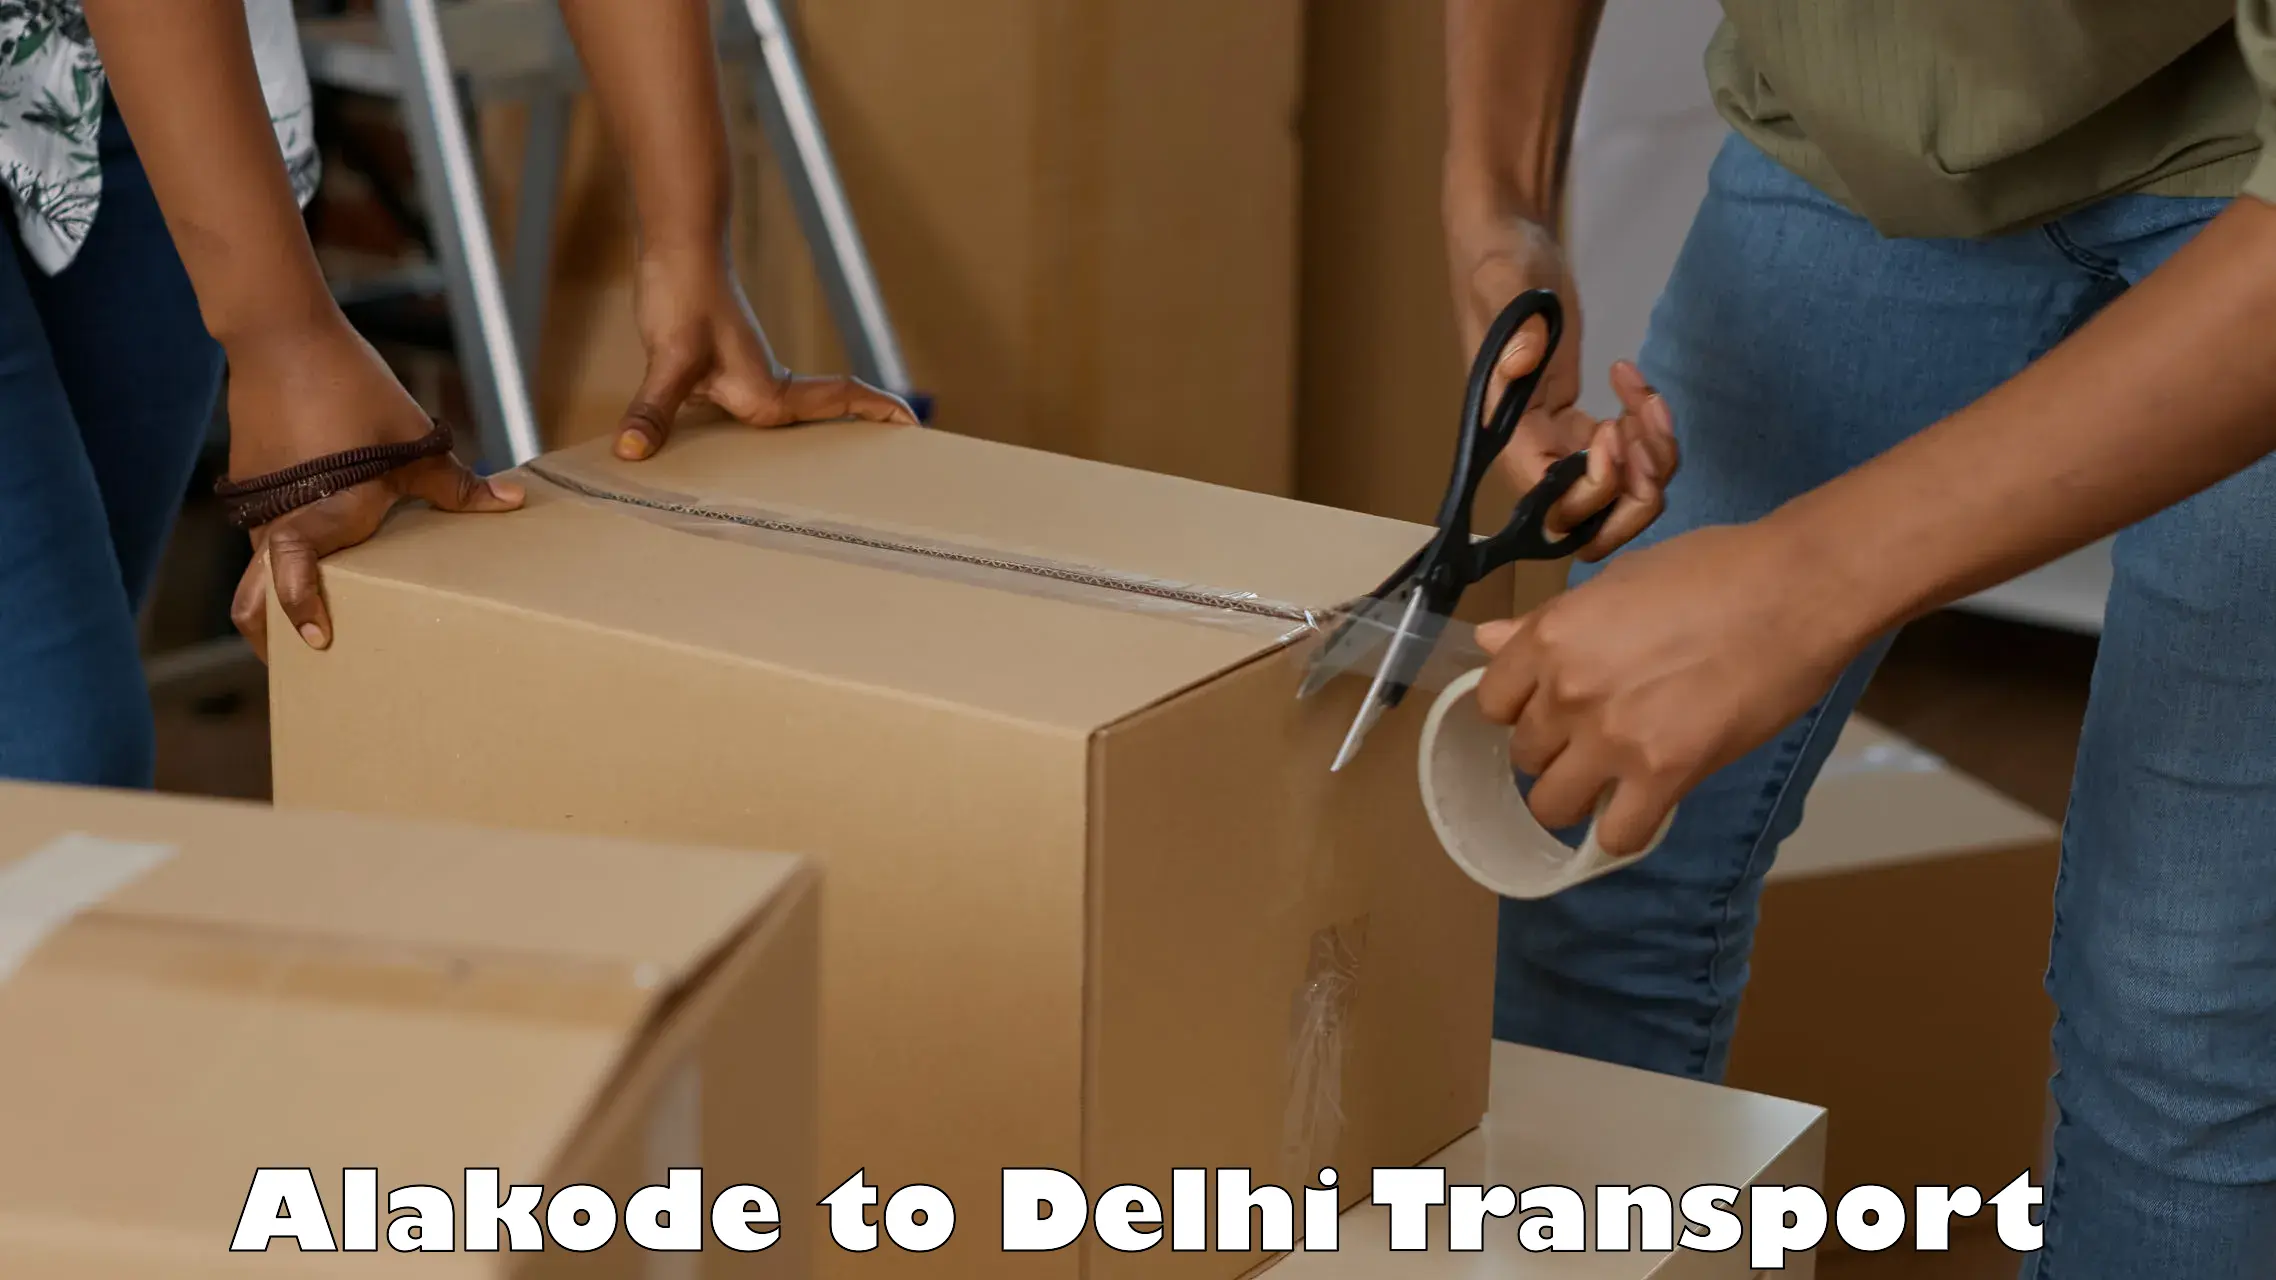 Material transport services Alakode to Subhash Nagar